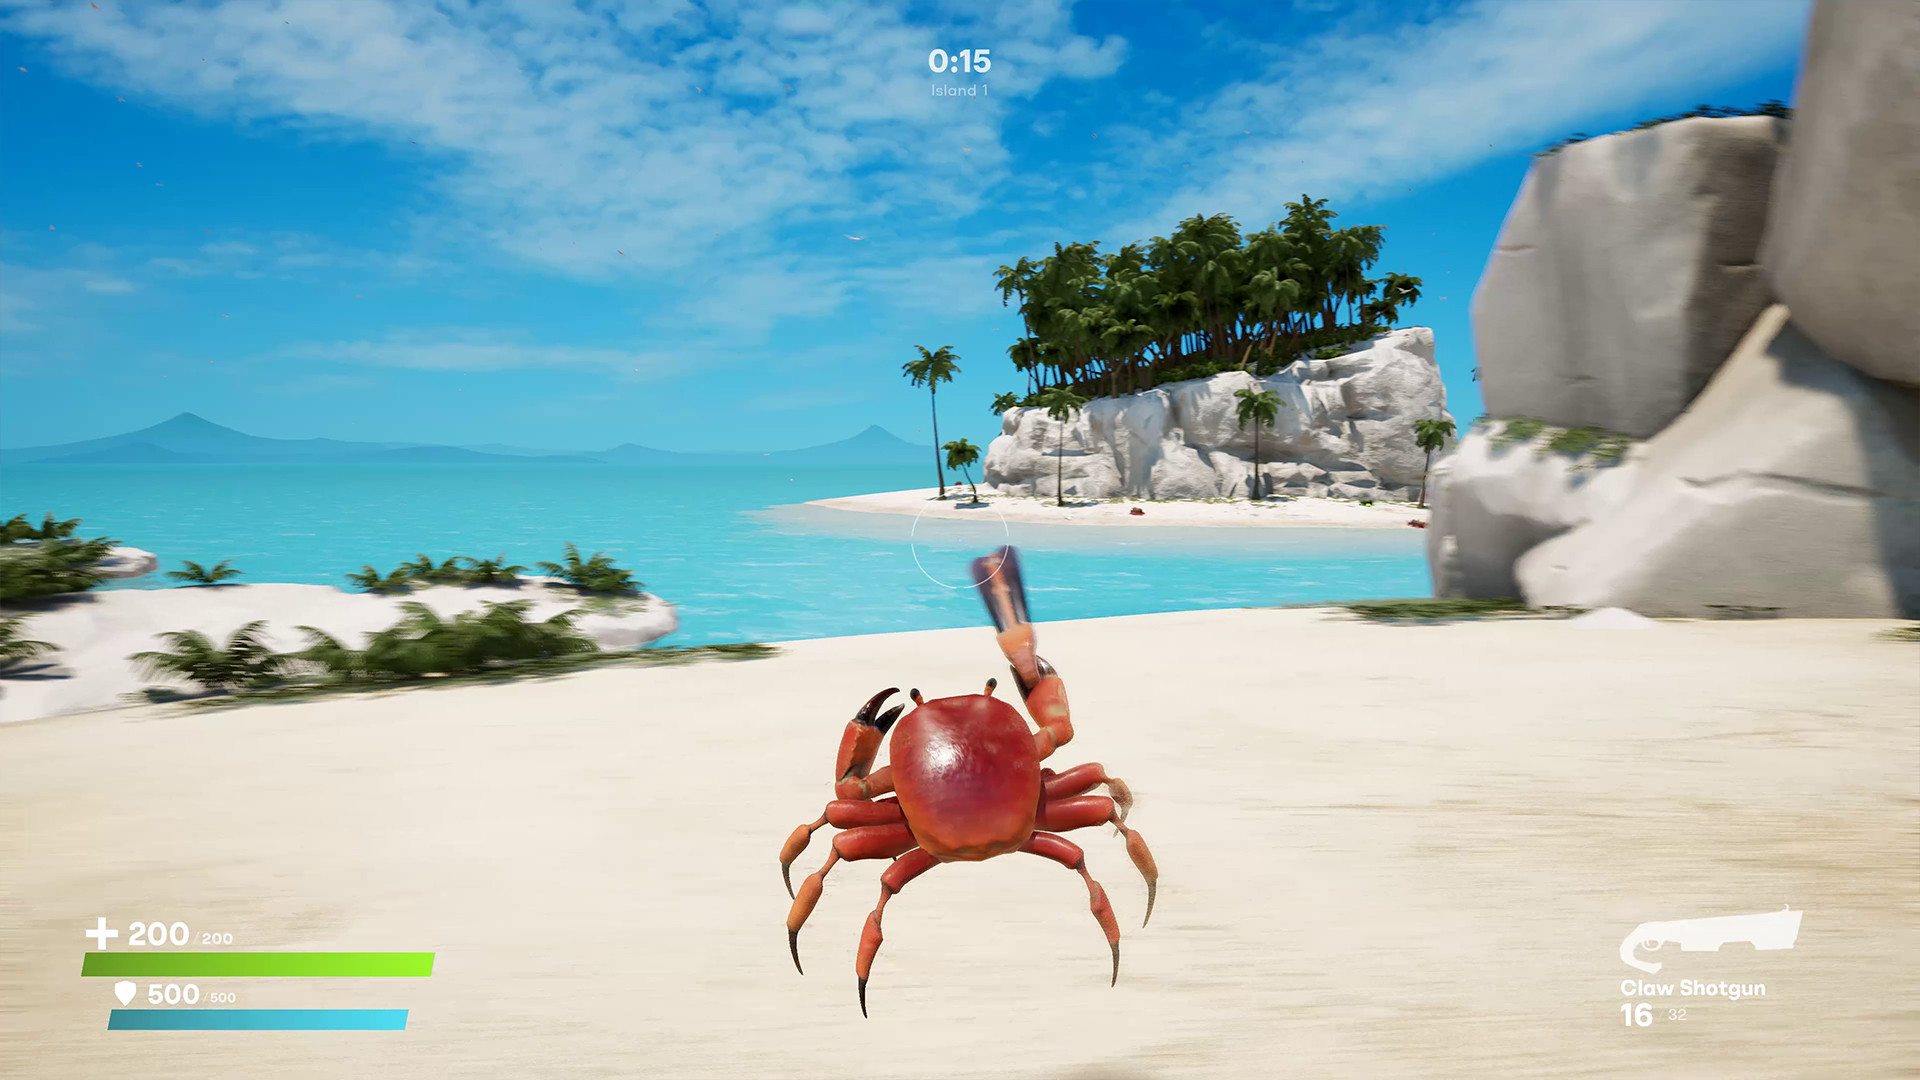 crab game trailer